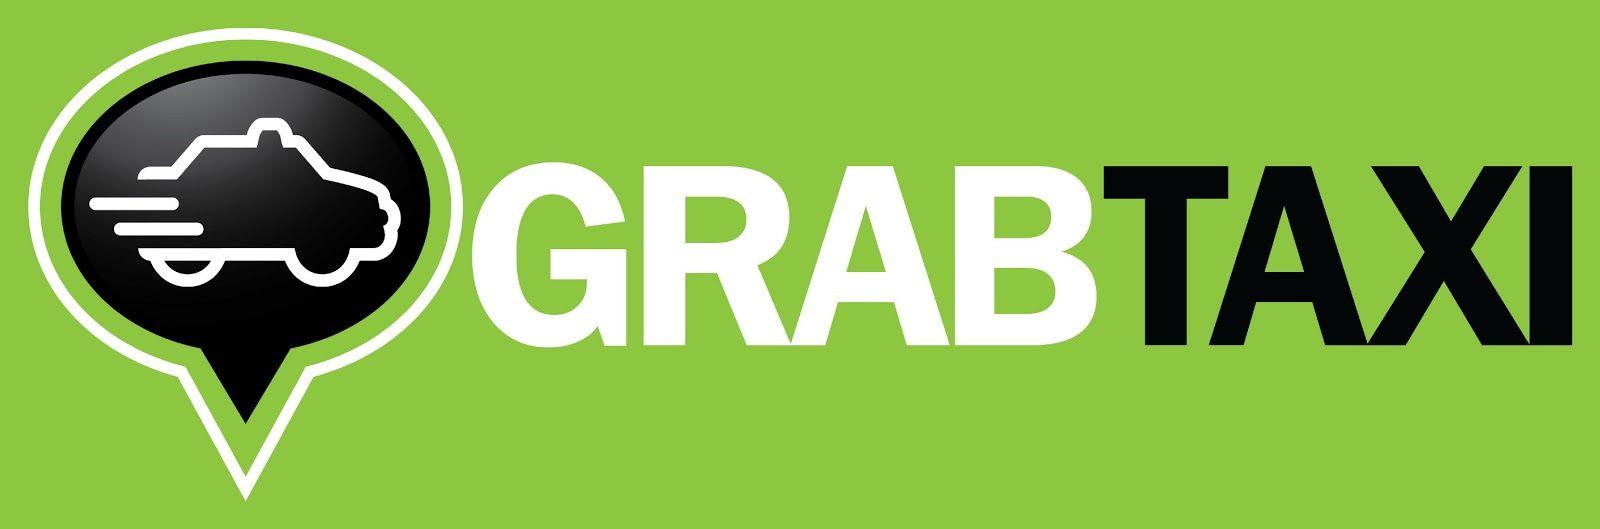 GrabTaxi Logo - GrabTaxi launches in CDO | TsadaGyud! - Cagayan de Oro's Lifestyle ...